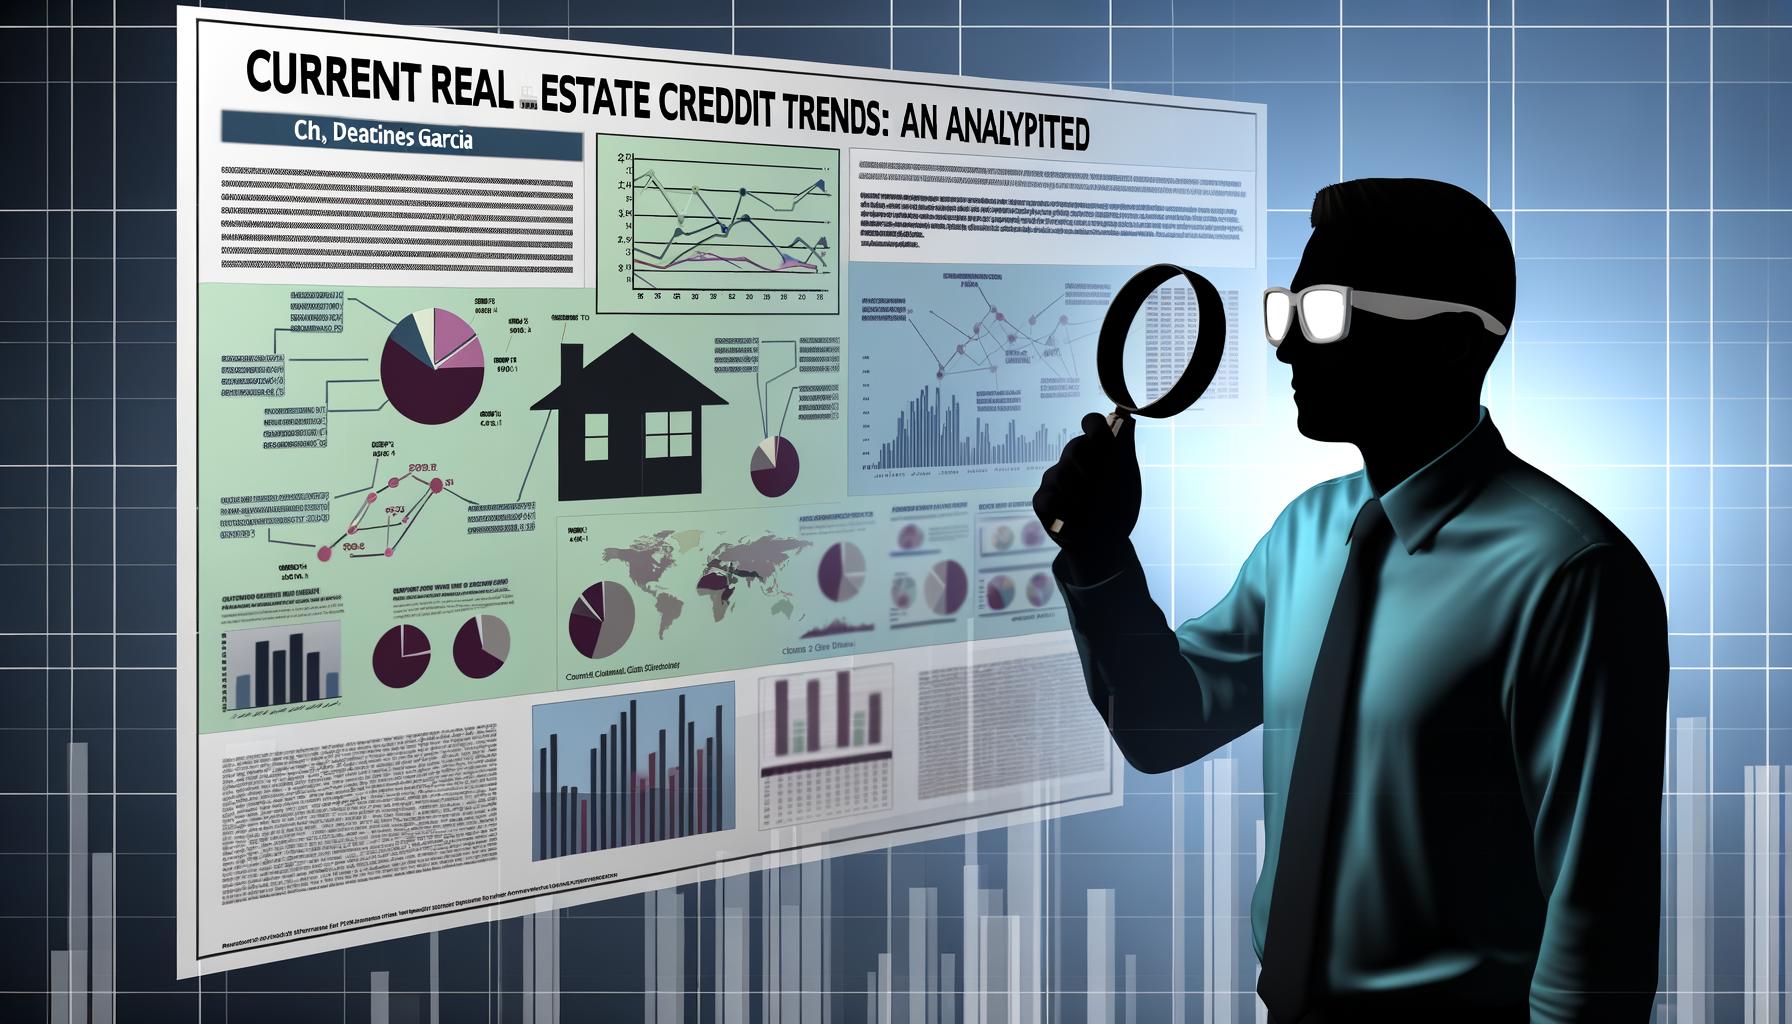 1. Tendances Actuelles du Crédit Immobilier: Une Analyse Décryptée par Charles Garcia